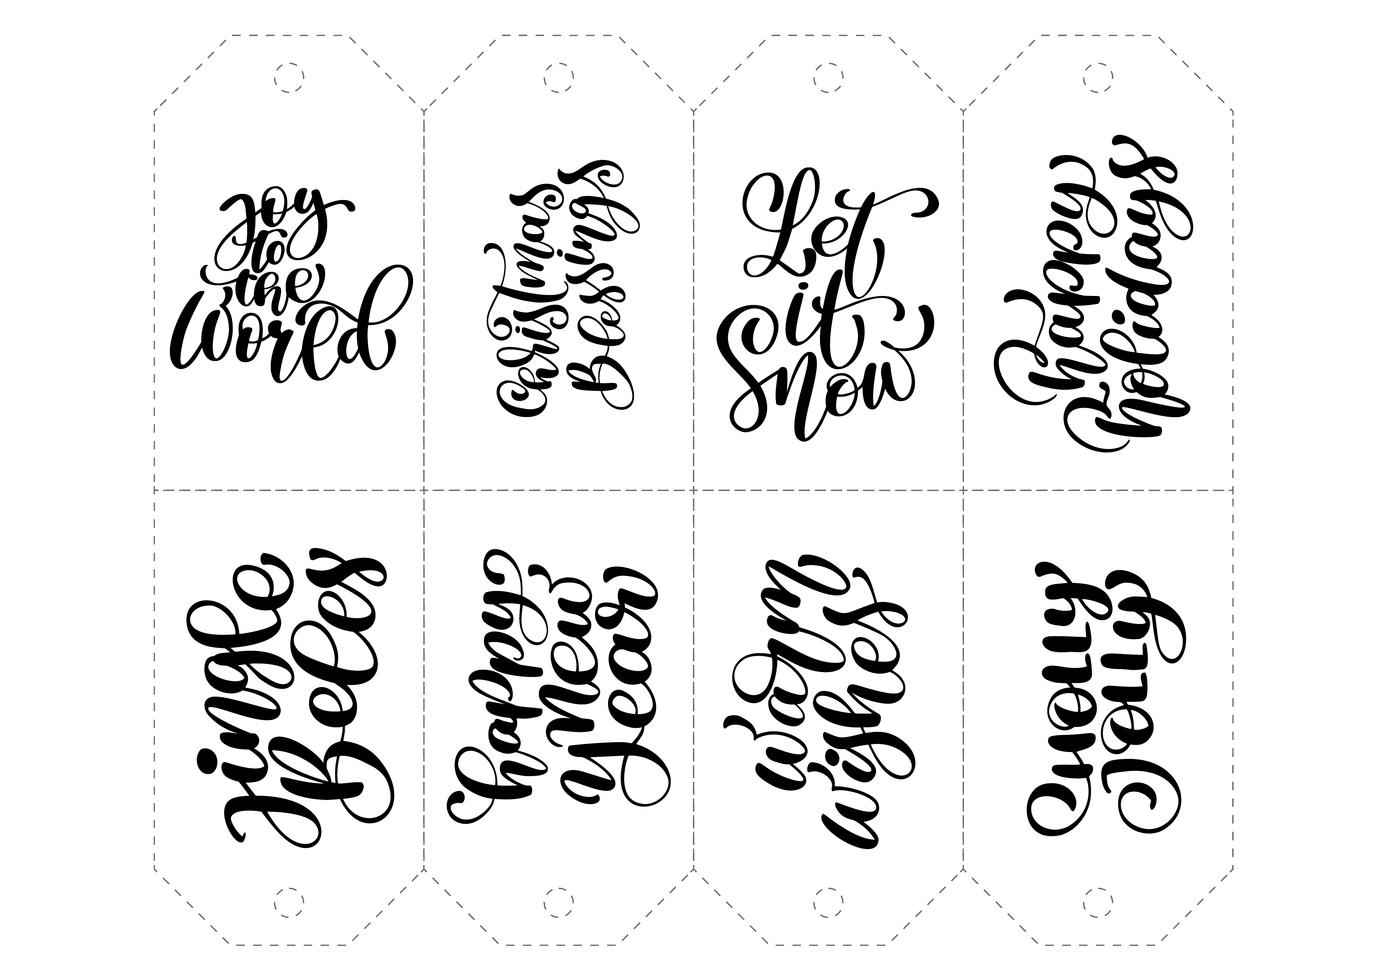 Vektor kalligrafi uppsättning fraser för taggar. Isolerad Jul Hand Drawn Lettering Illustration. Hjärtferie skissa klotter designkort. inredning för tryck och inredning